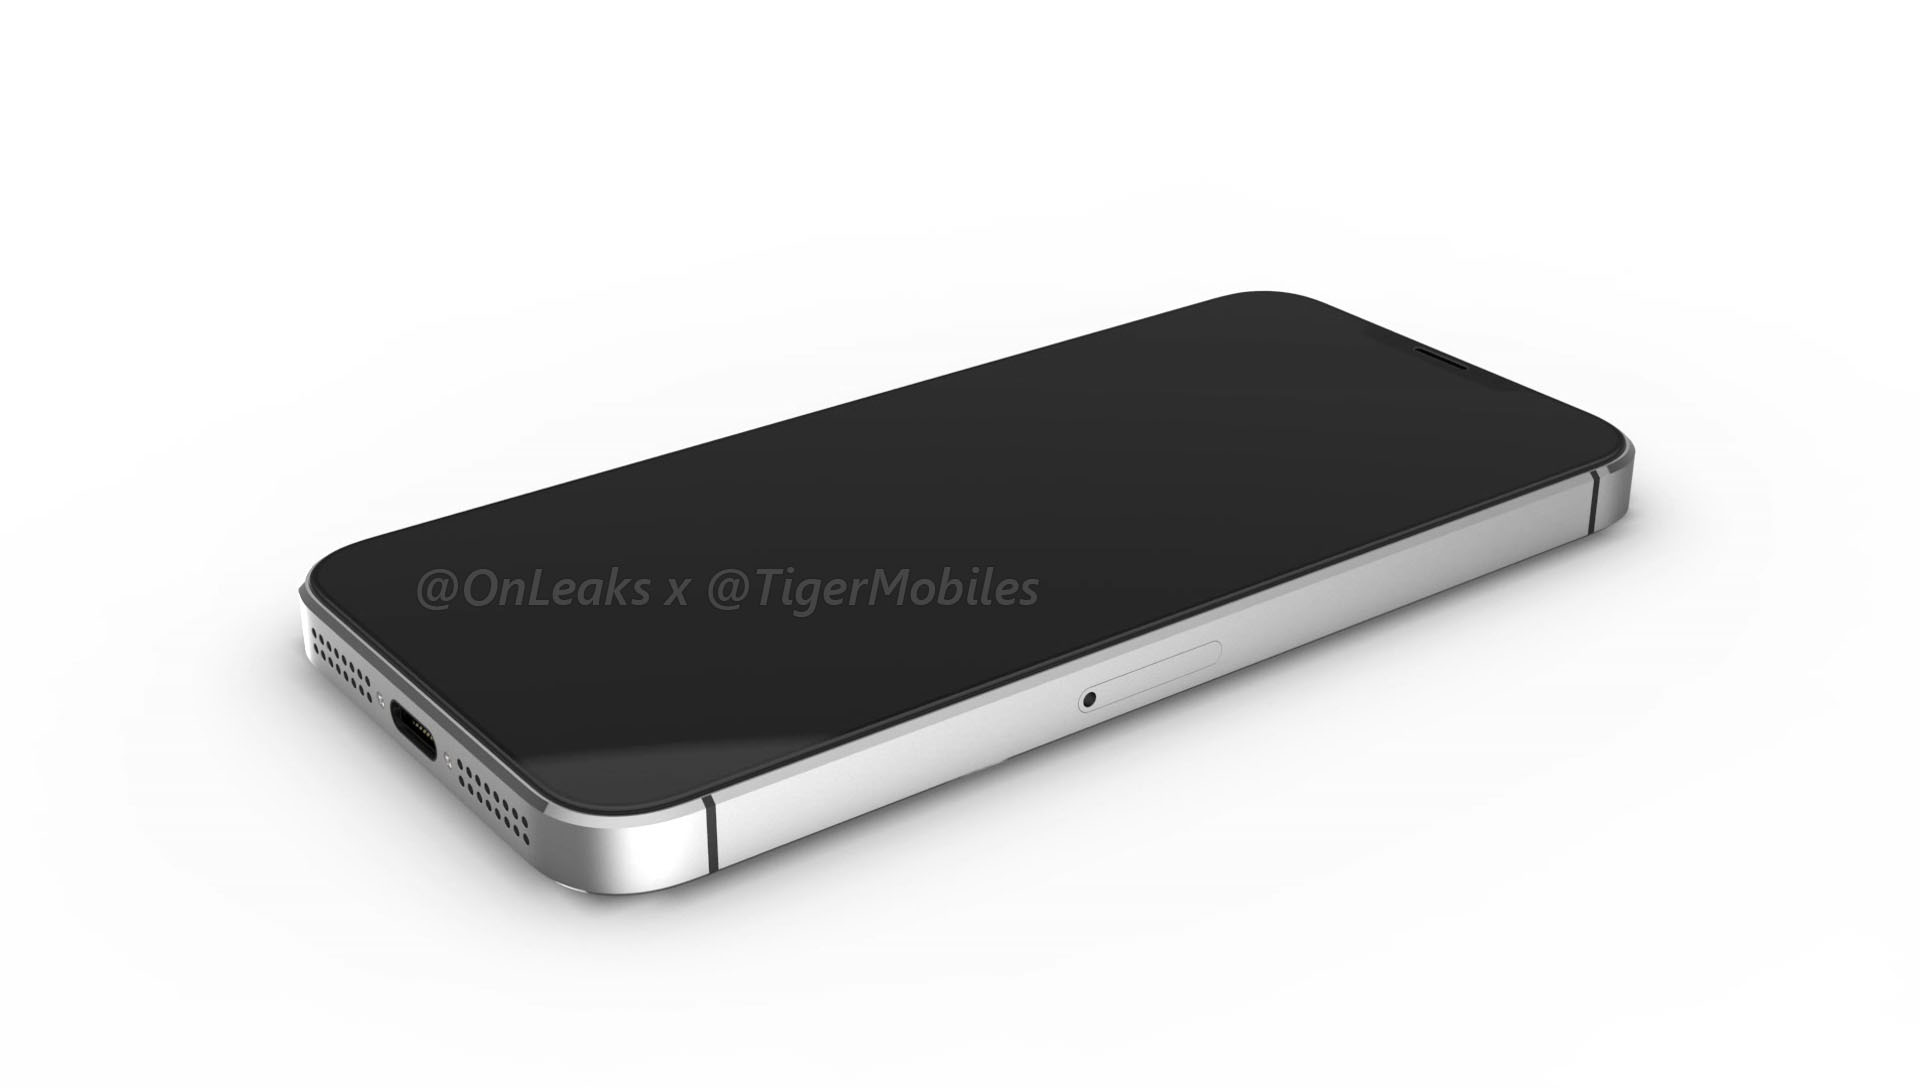 Hé lộ toàn bộ thiết kế truyền thống tuyệt đẹp
của iPhone SE 2 qua bộ ảnh render mới rò rỉ